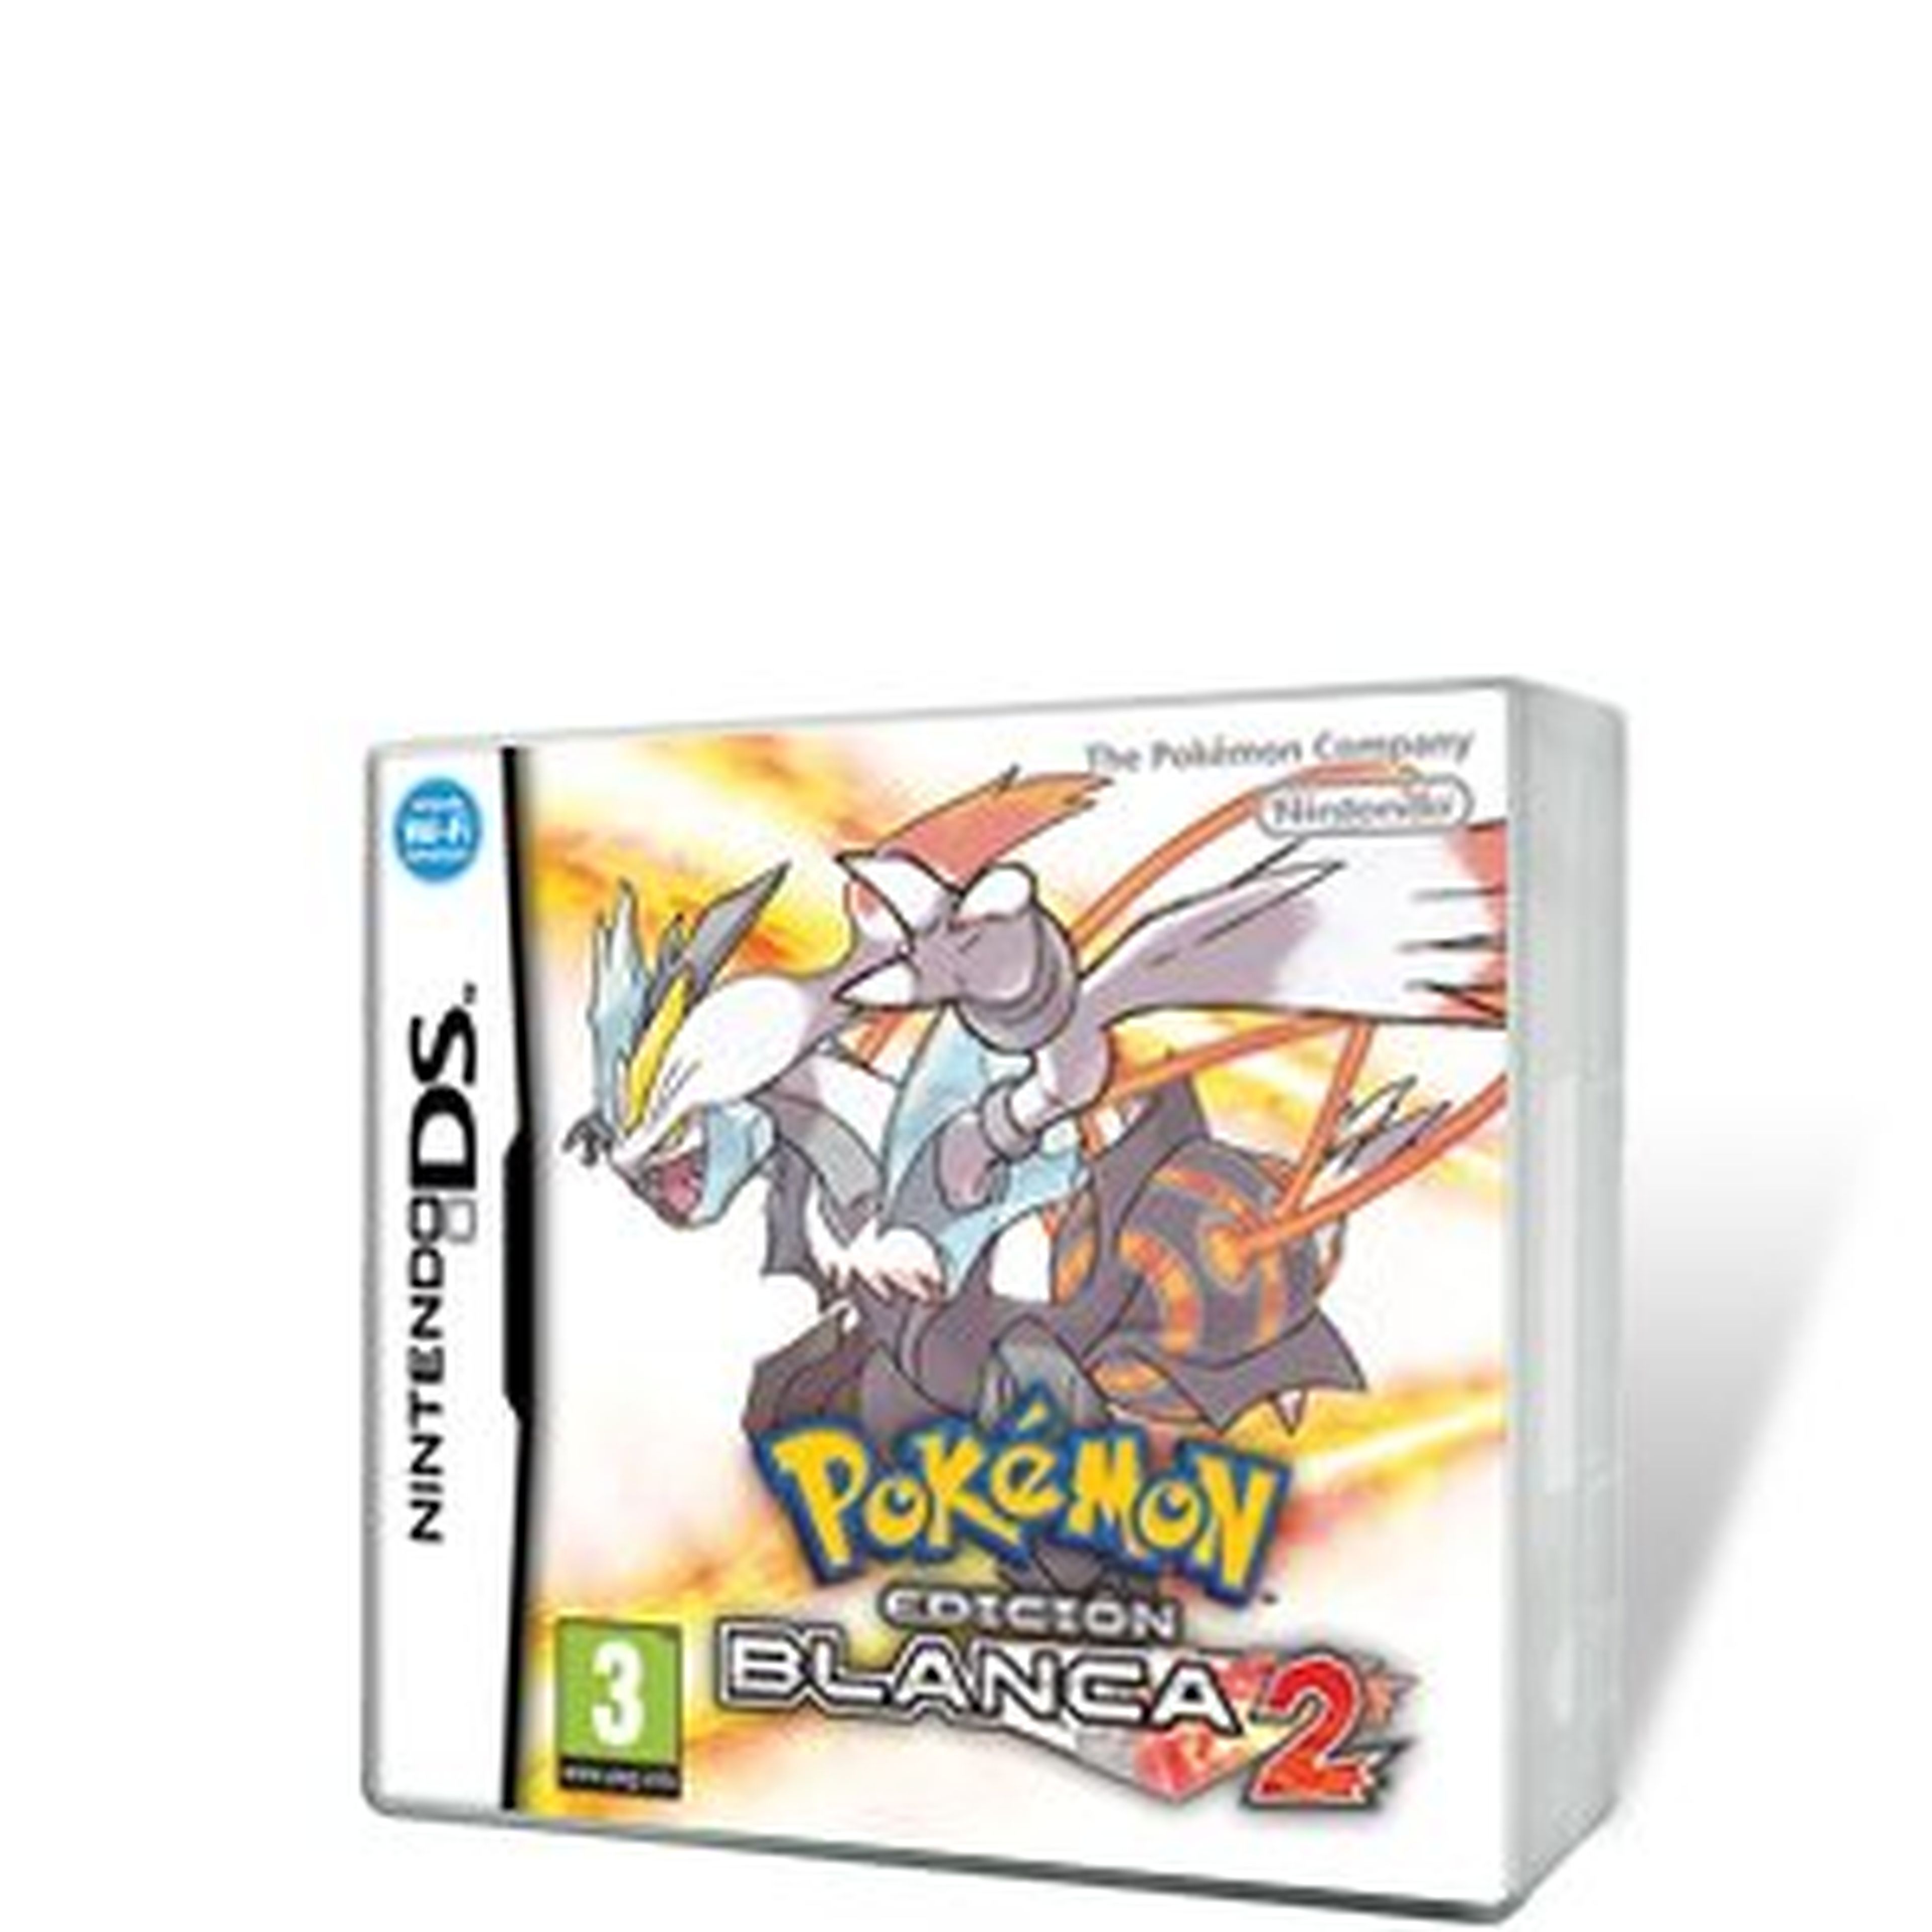 Pokémon Edición Blanca 2 para NDS